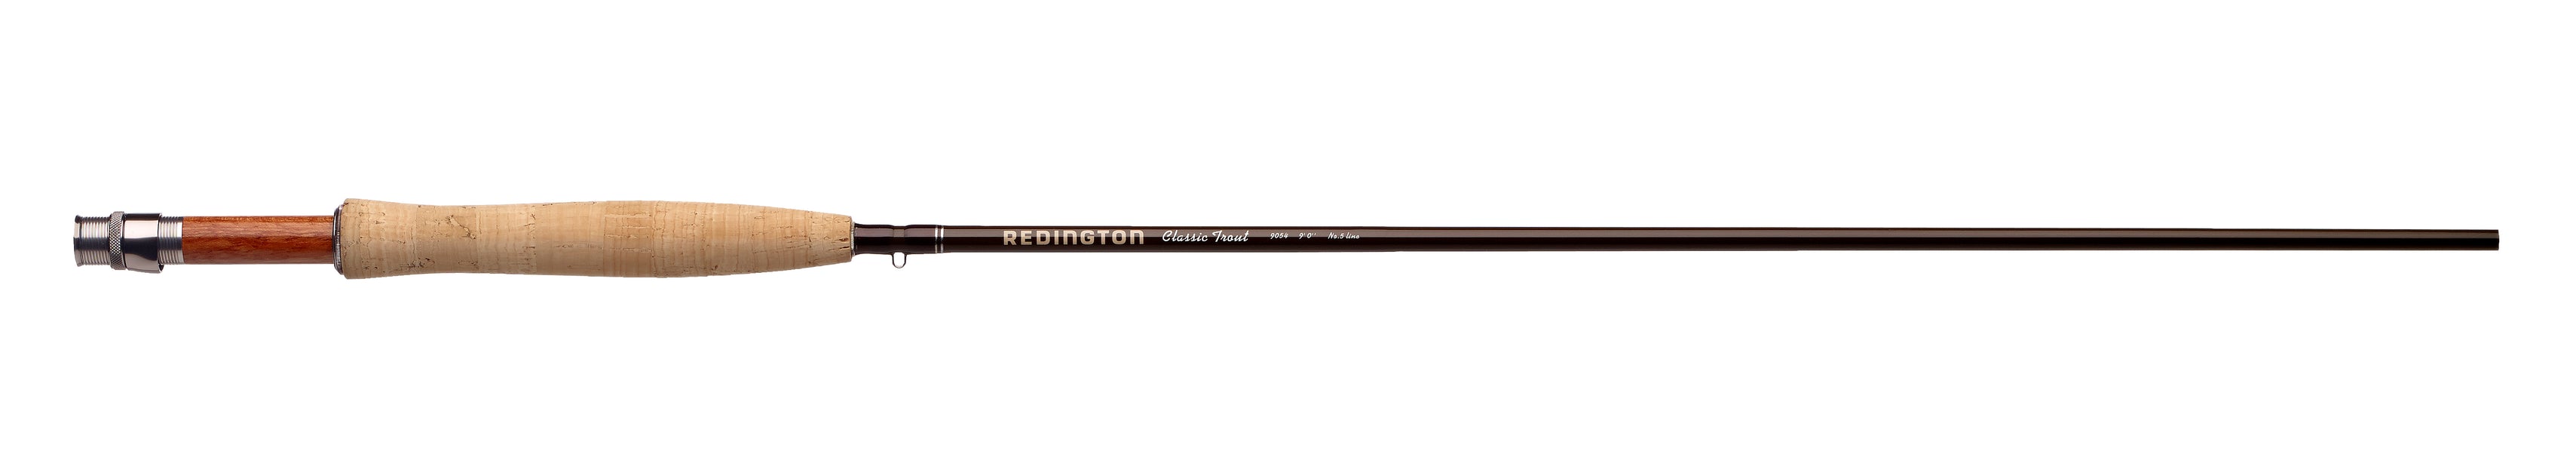 Redington Classic Trout 386-4 8'6 4-Pieces Rod for sale online